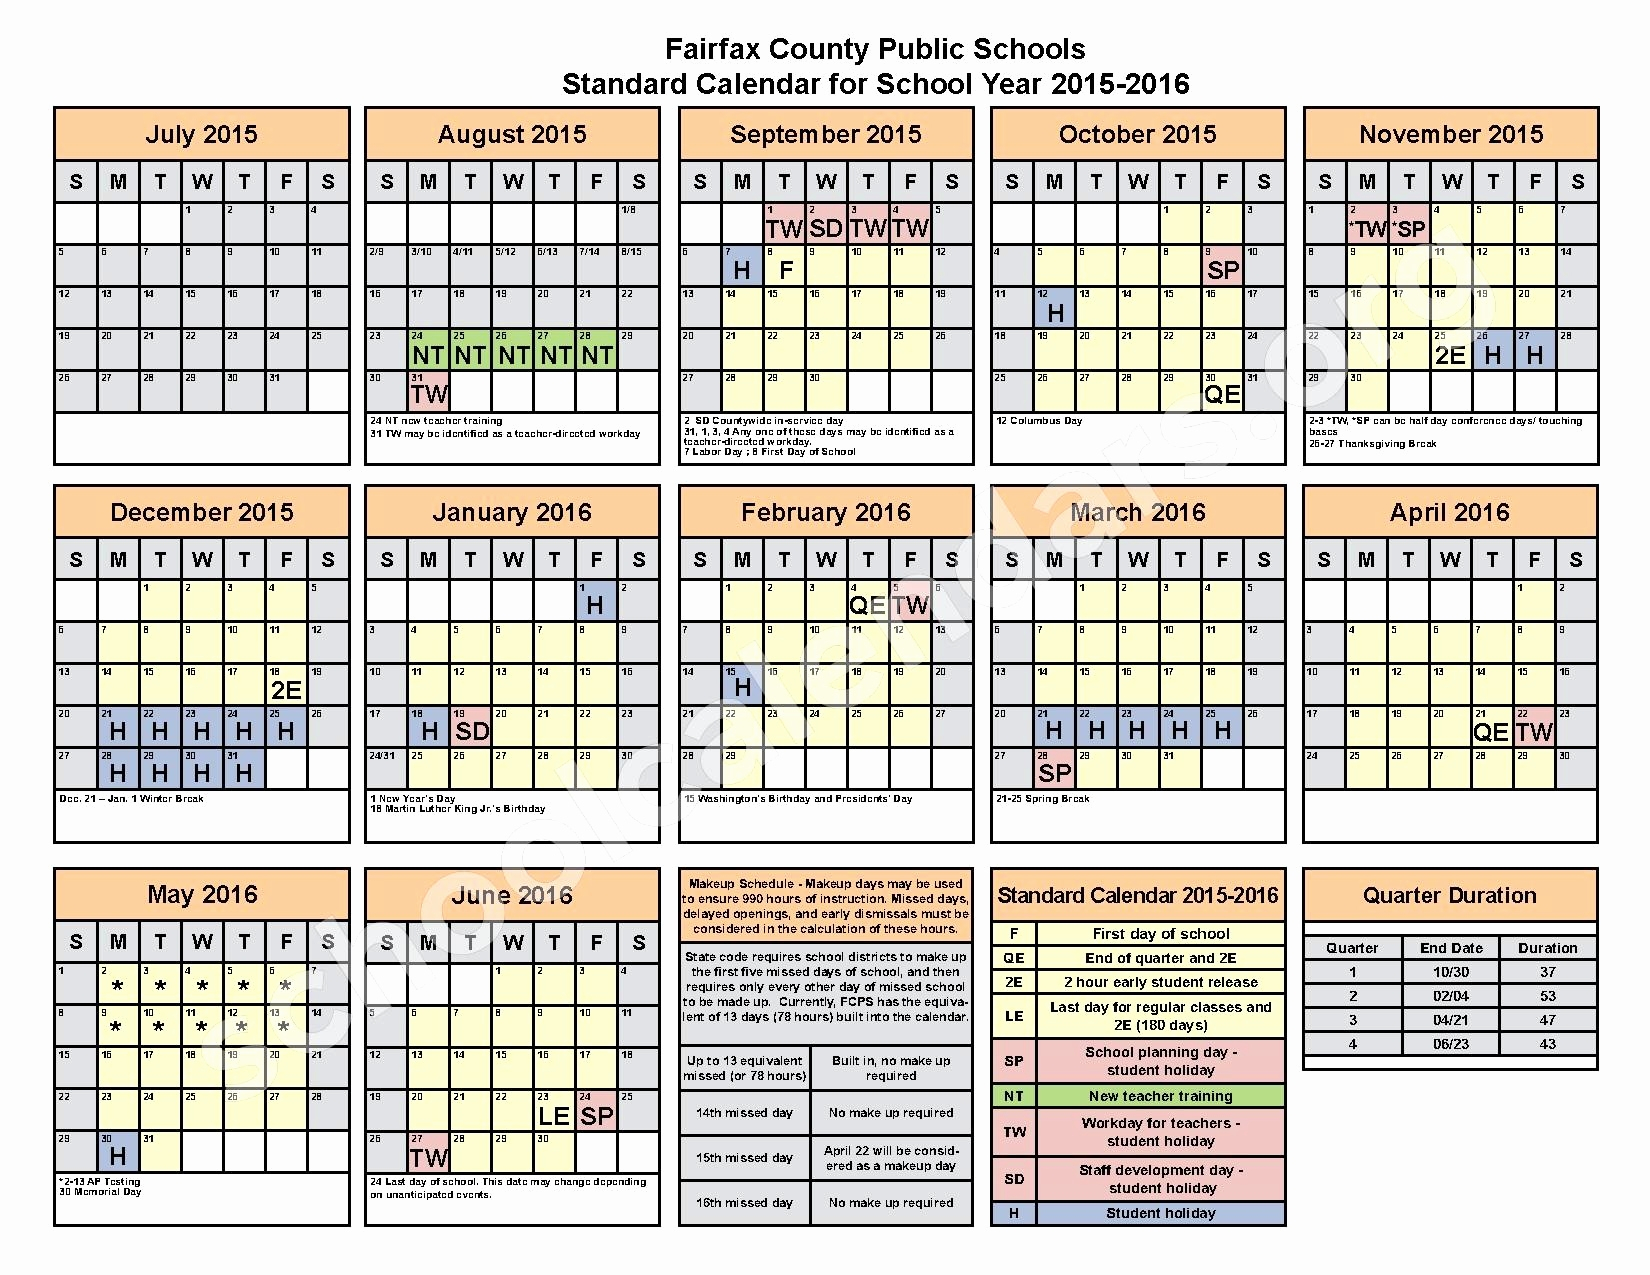 Fairfax County Calendar